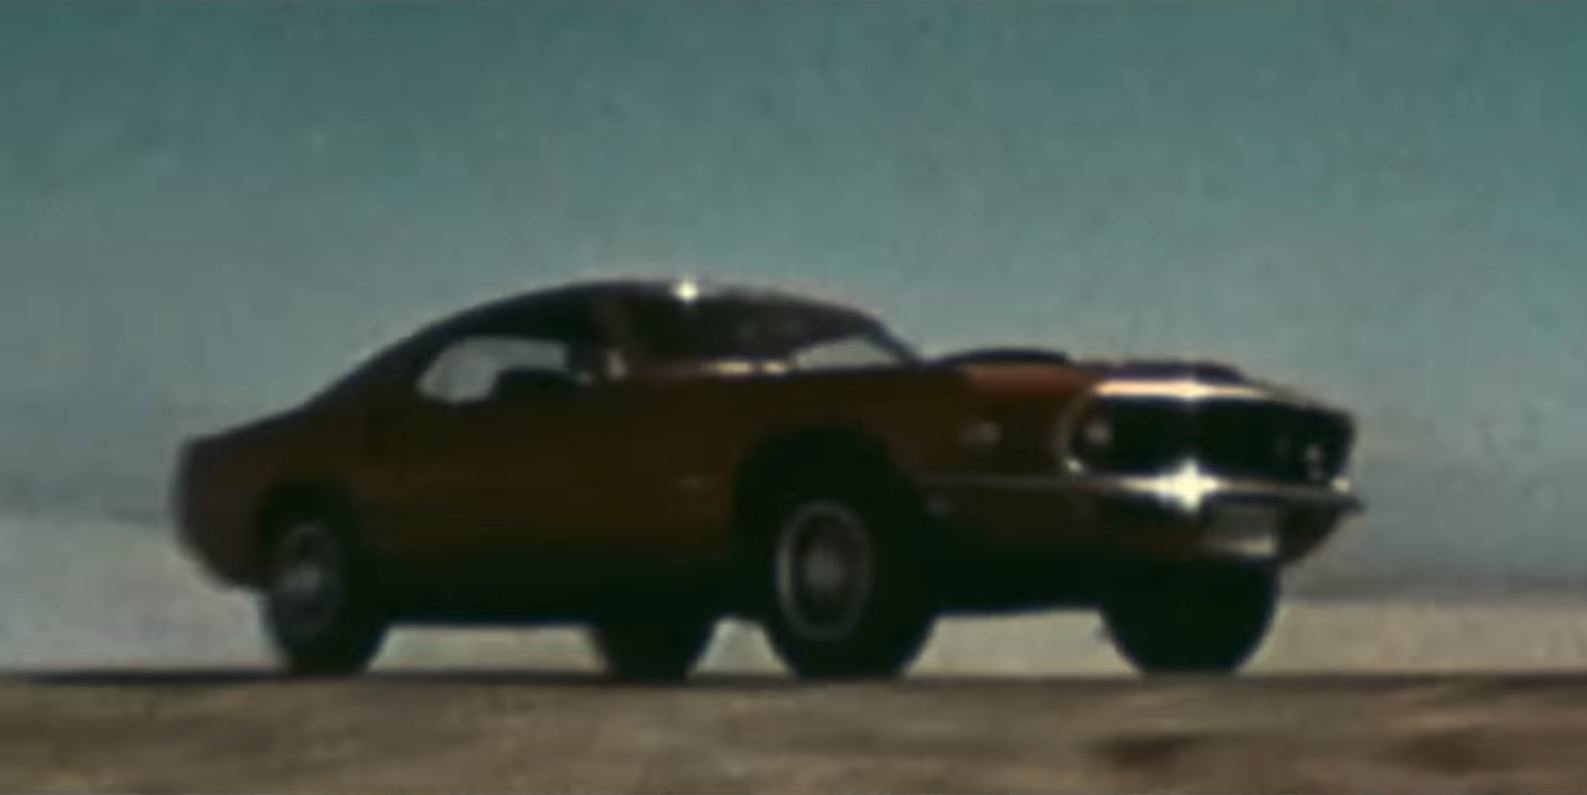 Ford ve svém klipu představil zřejmě první generaci hybridního Mustangu